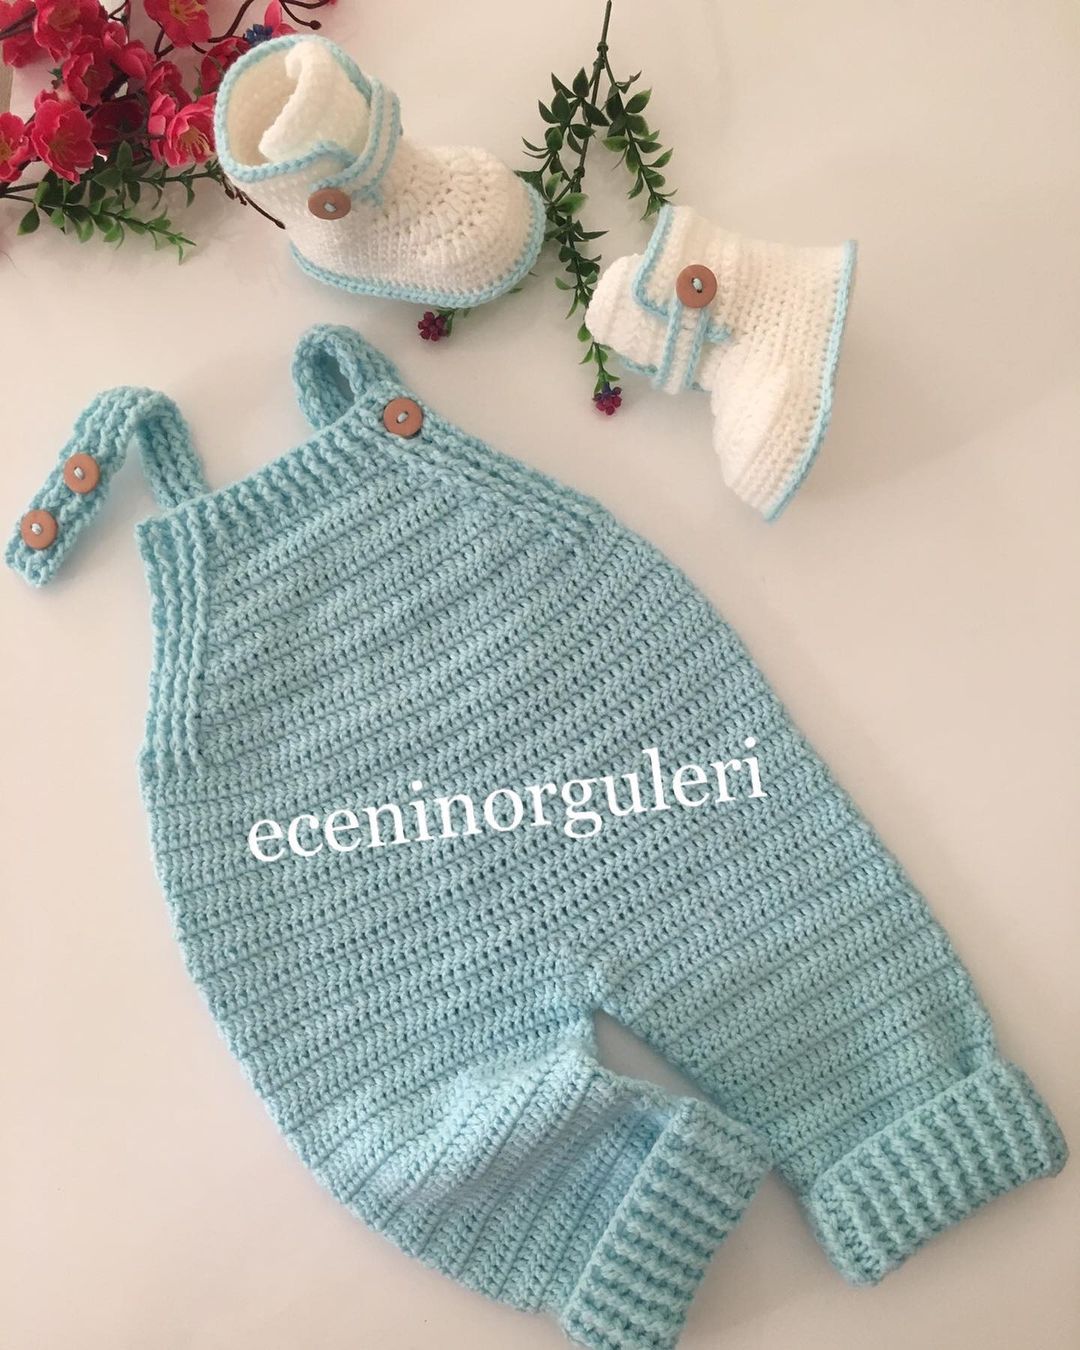 Crochet baby romper in 3 easy - Crochet mery